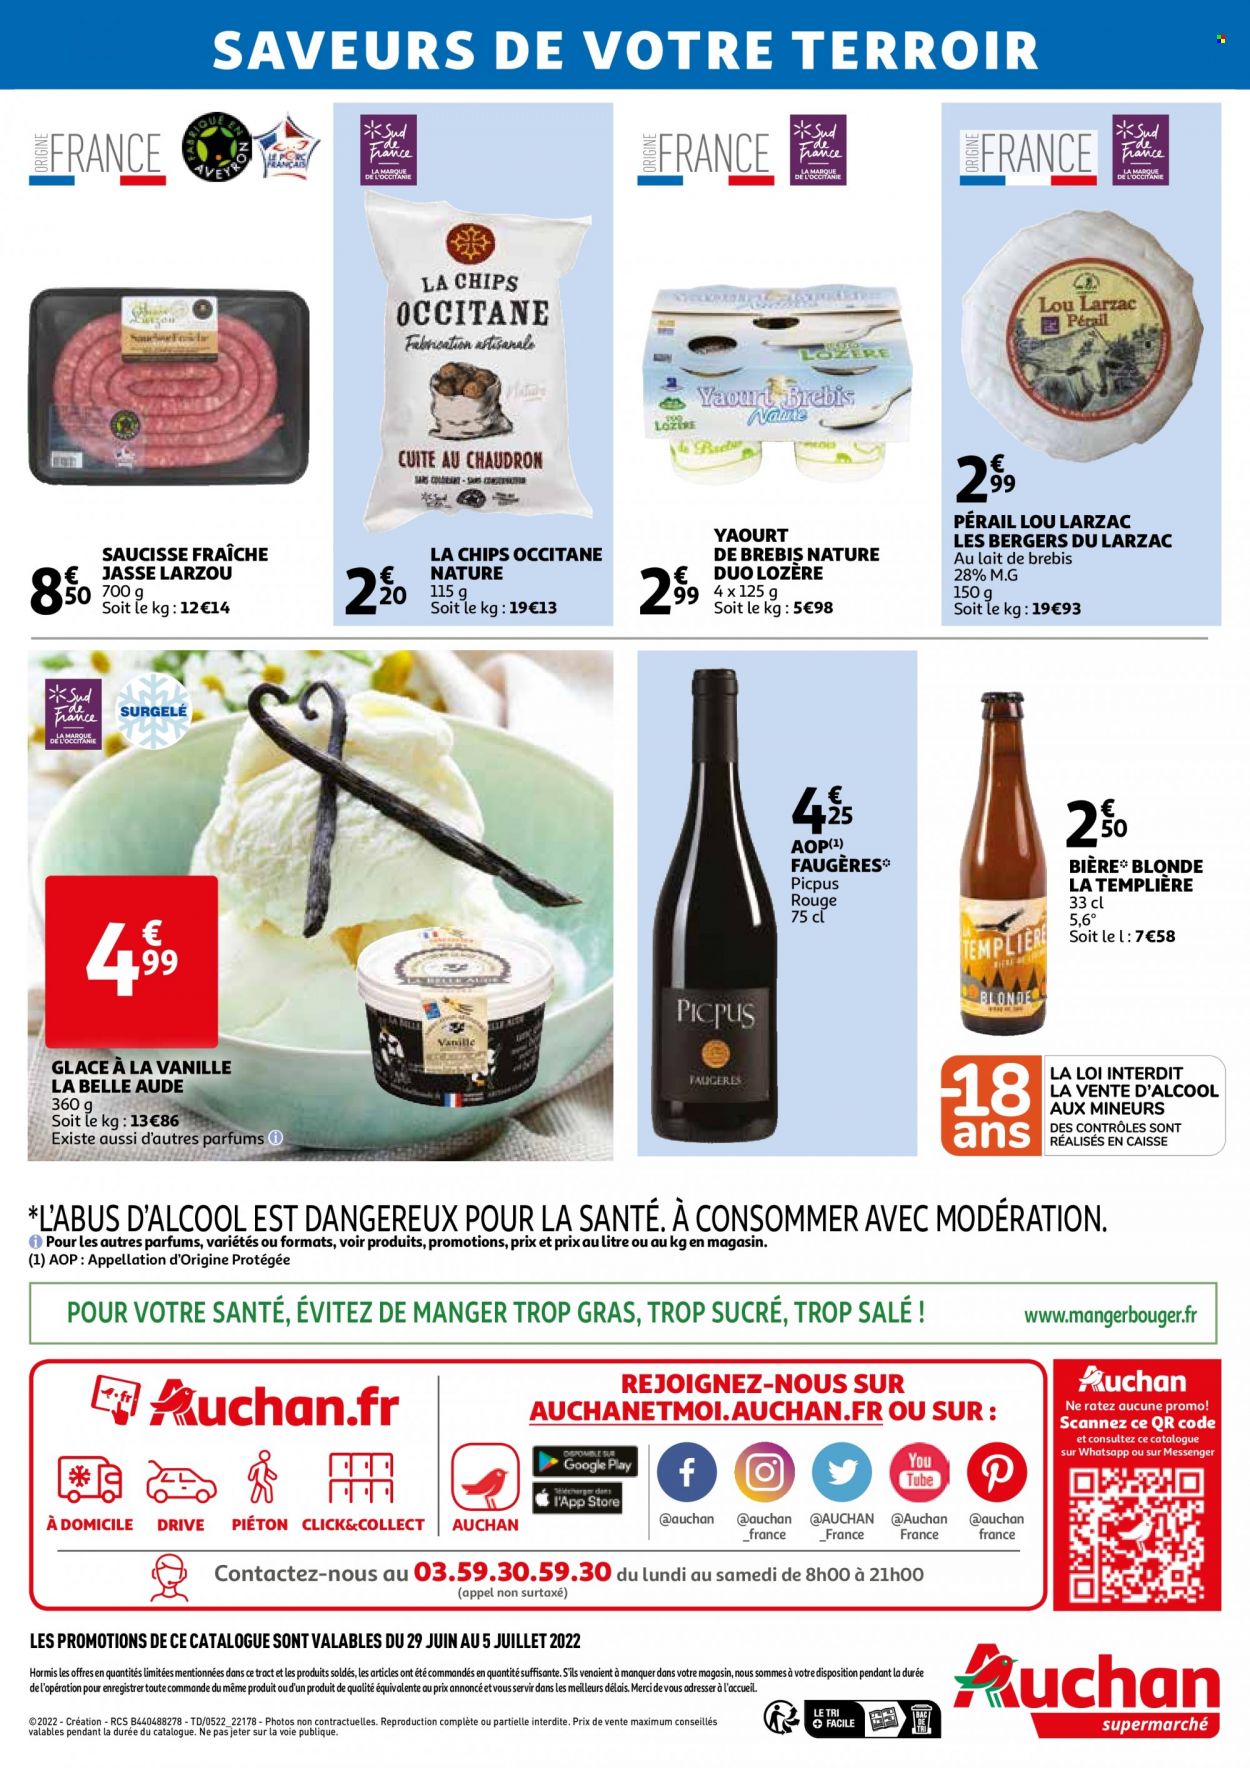 thumbnail - Catalogue Auchan - 29/06/2022 - 05/07/2022 - Produits soldés - bière, bière blonde, saucisse, pérail, yaourt, chips. Page 2.